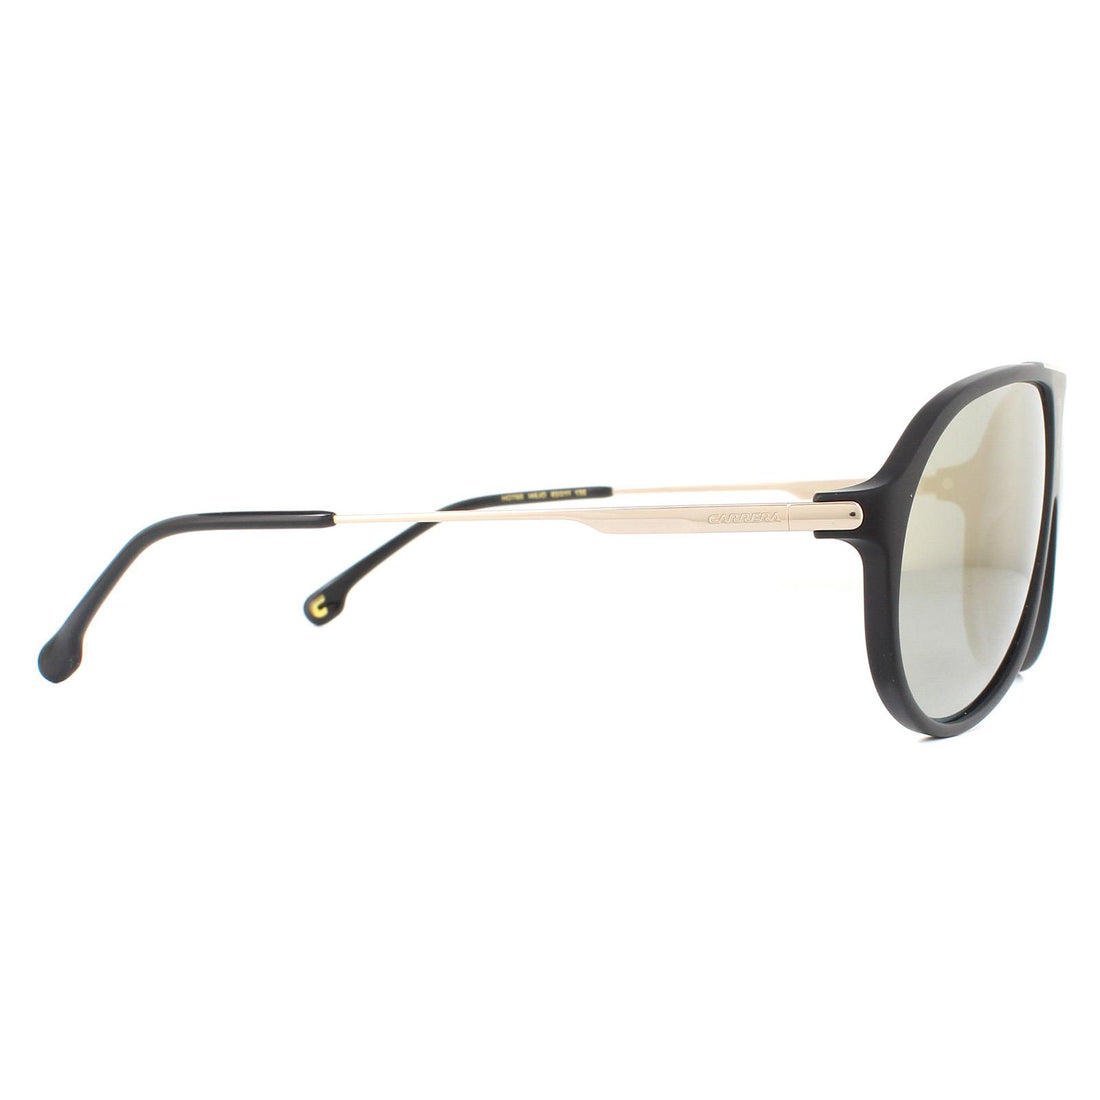 Carrera Hot 65 Sunglasses